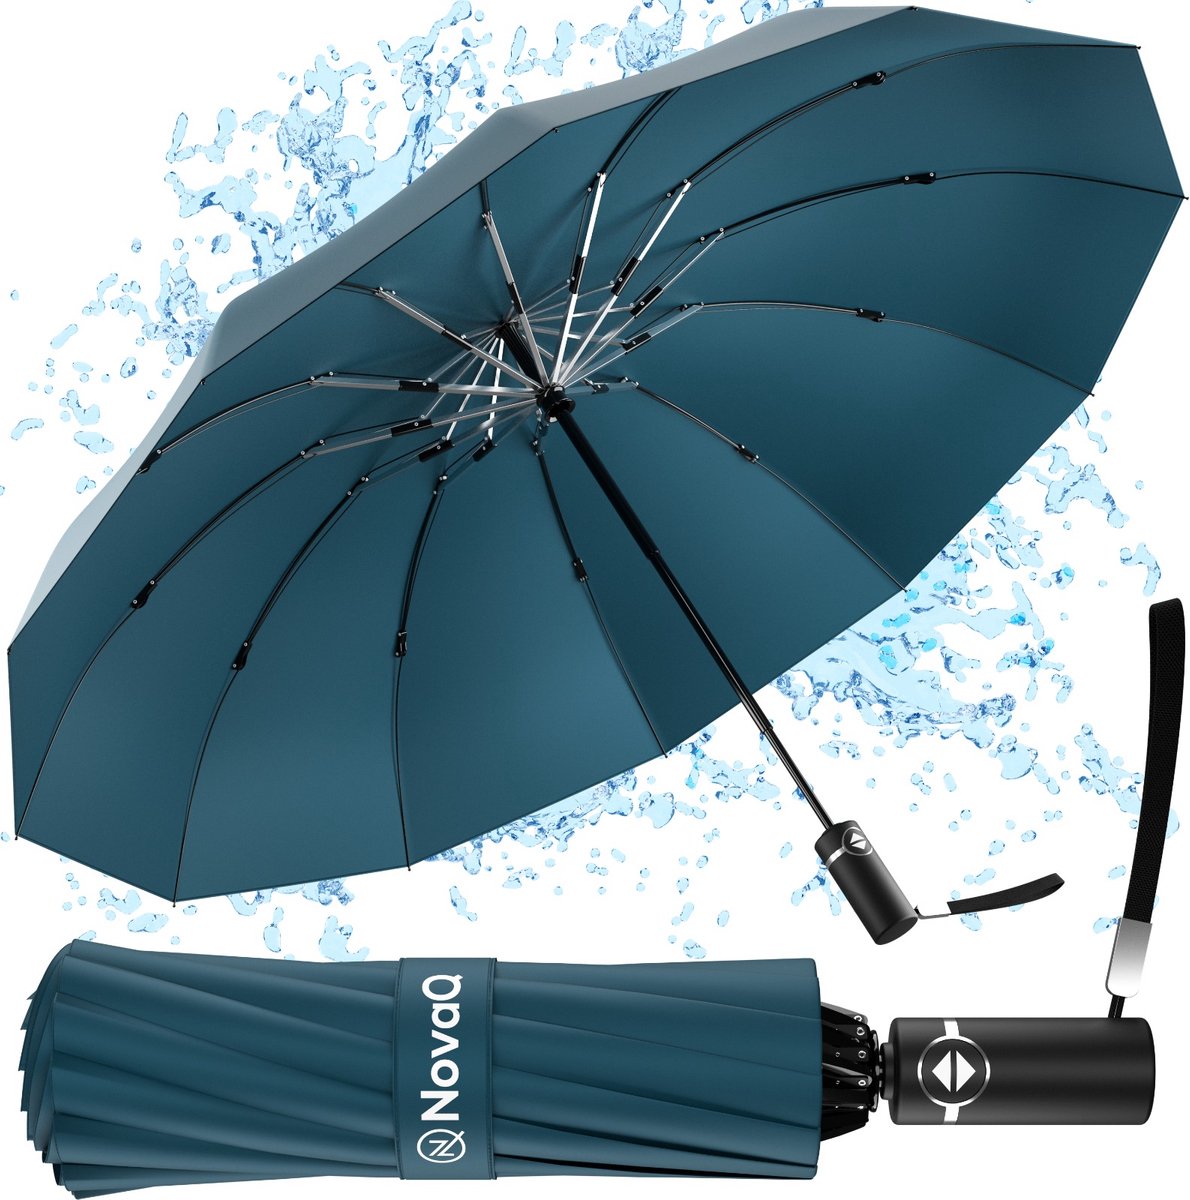 NovaQ Storm Paraplu